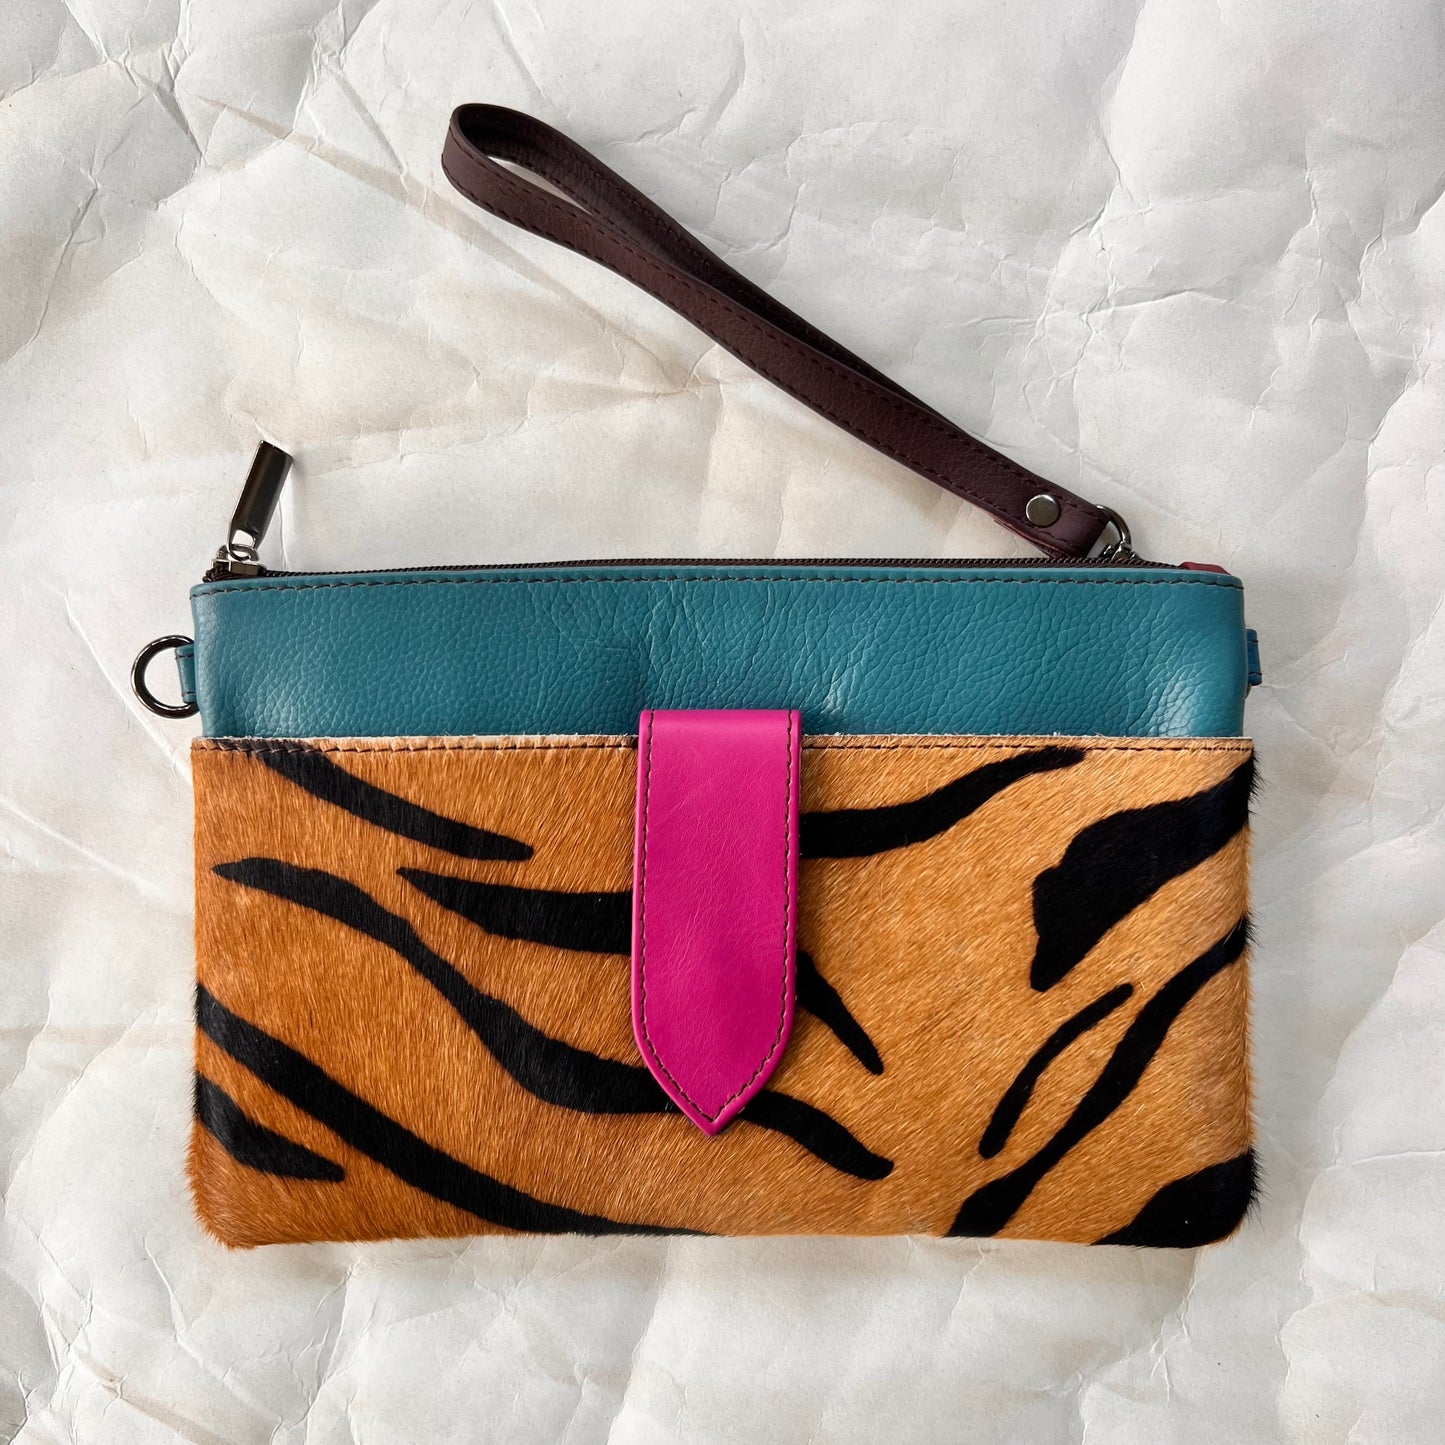 turquoise rectangular bag with cheetah print pocket, brown wristlet strap.